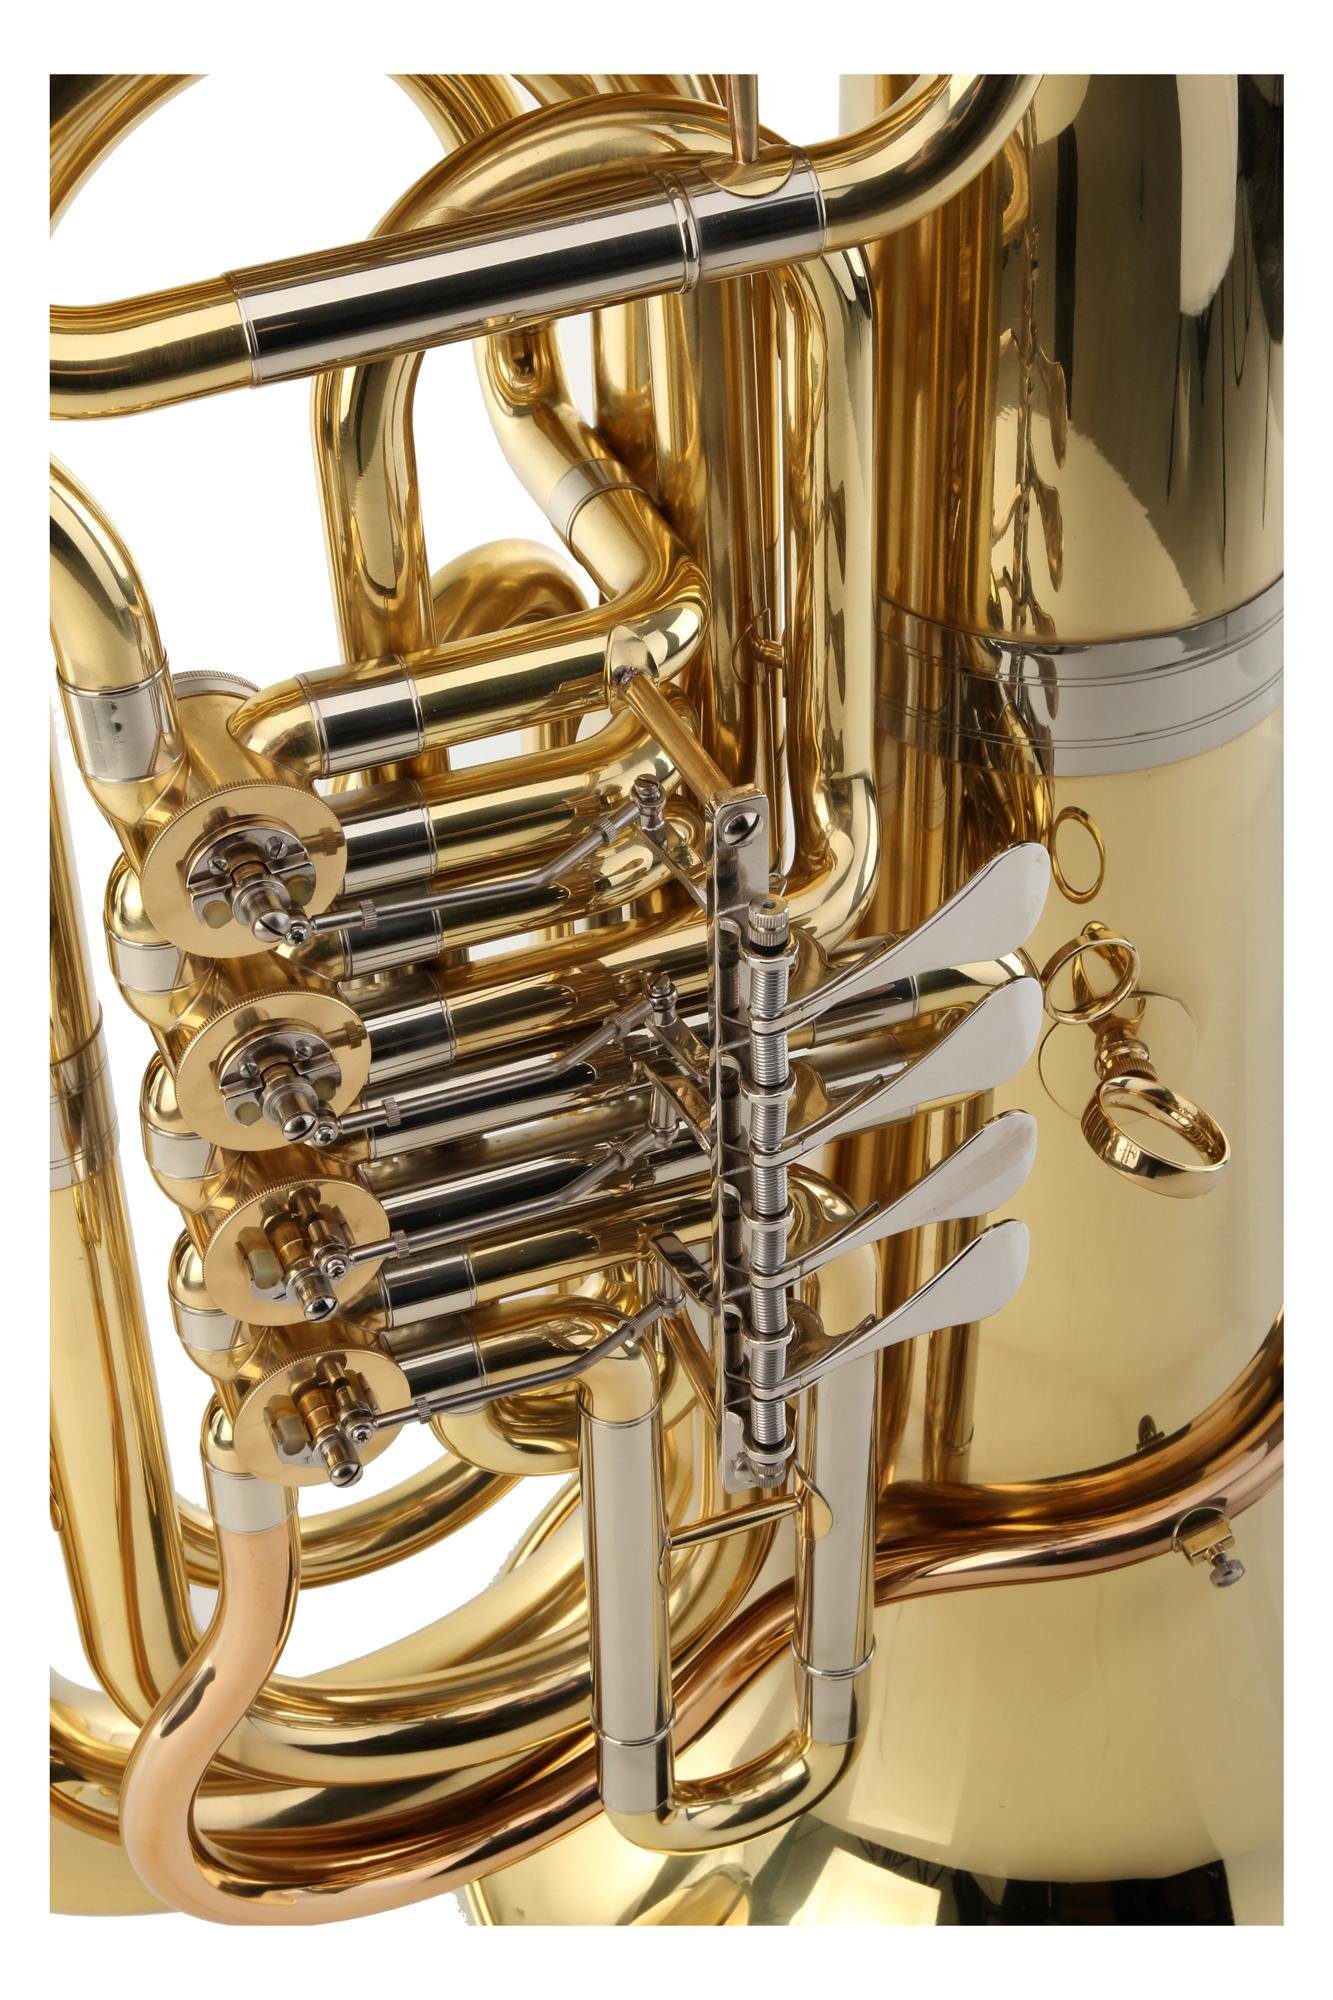 Classic Cantabile Bass-Trompete T-186 3/4 Tuba - Kompakte Bauform aus  Messing - Gewicht nur 8,9kg - Mundrohr aus Goldmessing - 4 Zylinderventile  - Inklusive Mundstück und Leichtkoffer mit Rollen, 3/4 Tuba